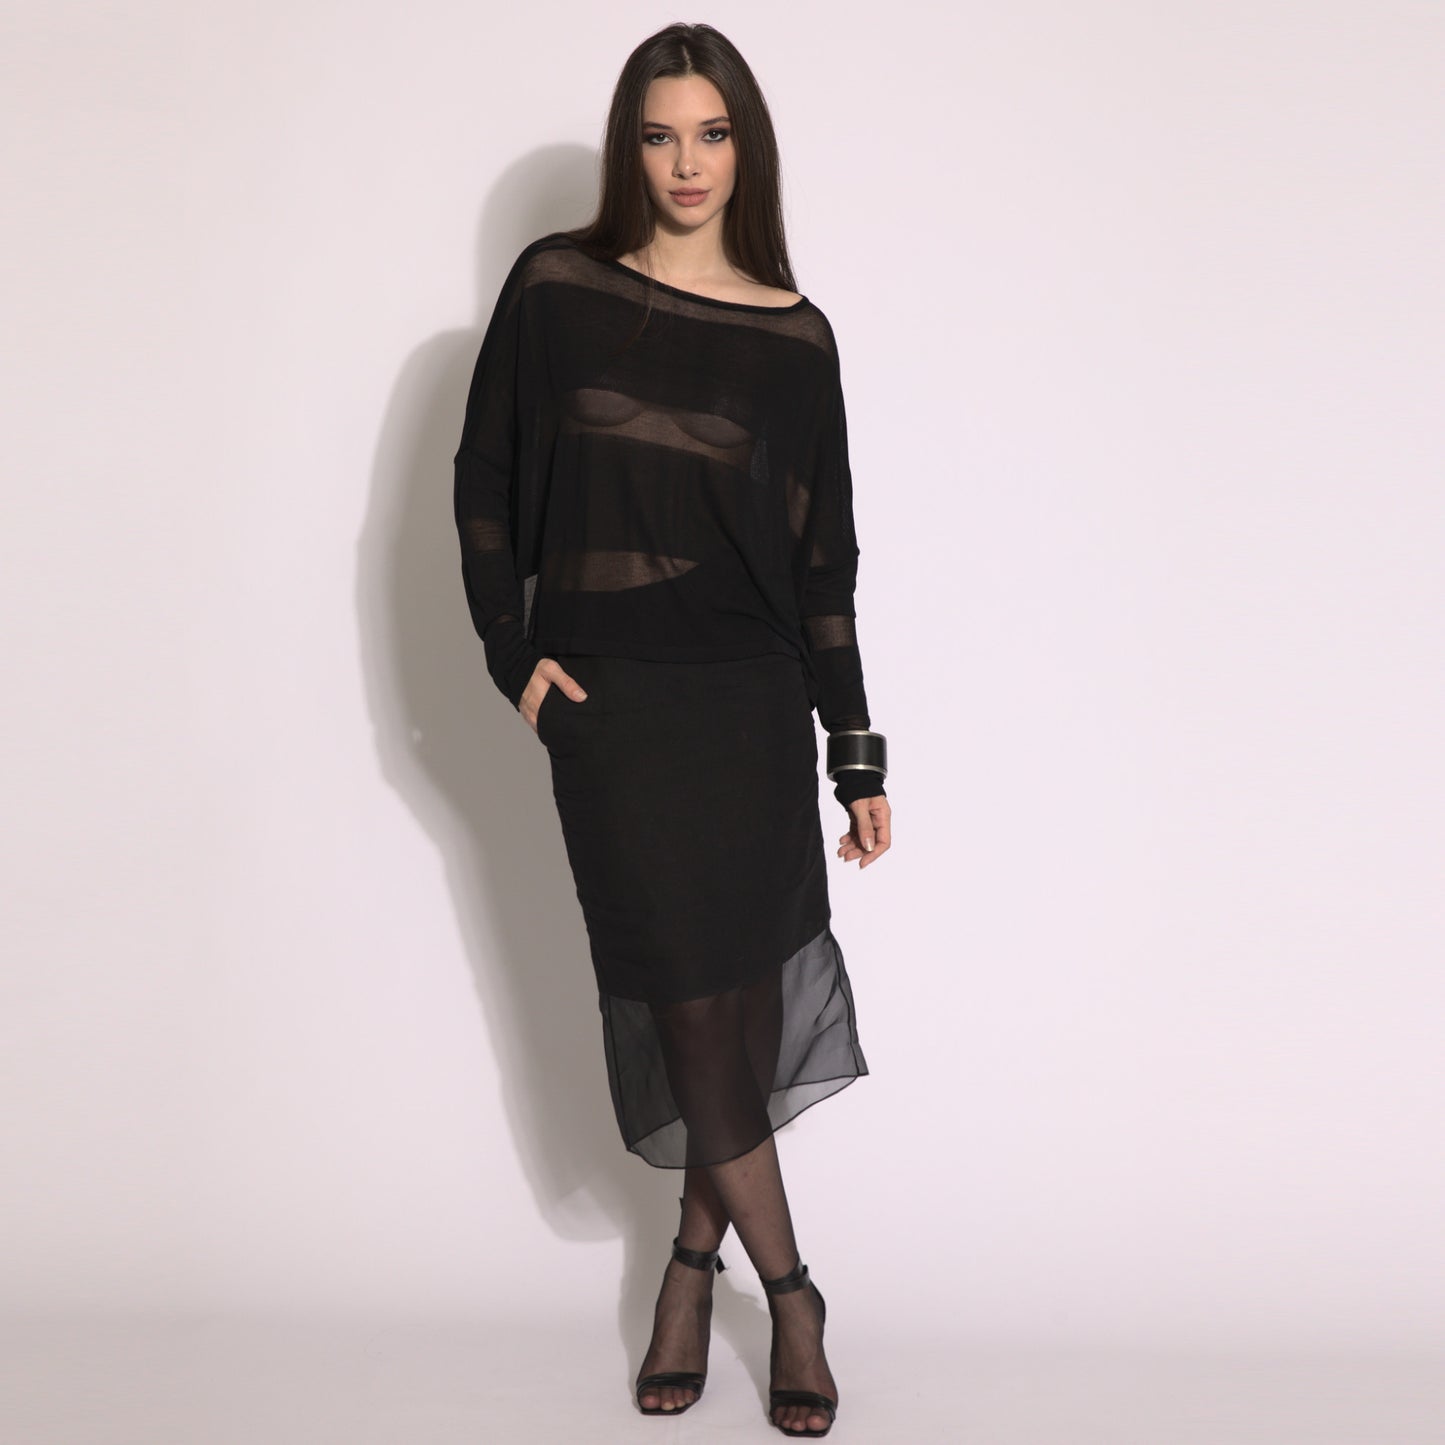 Giselle - Blusa de tricot listrada em preto com transparencias